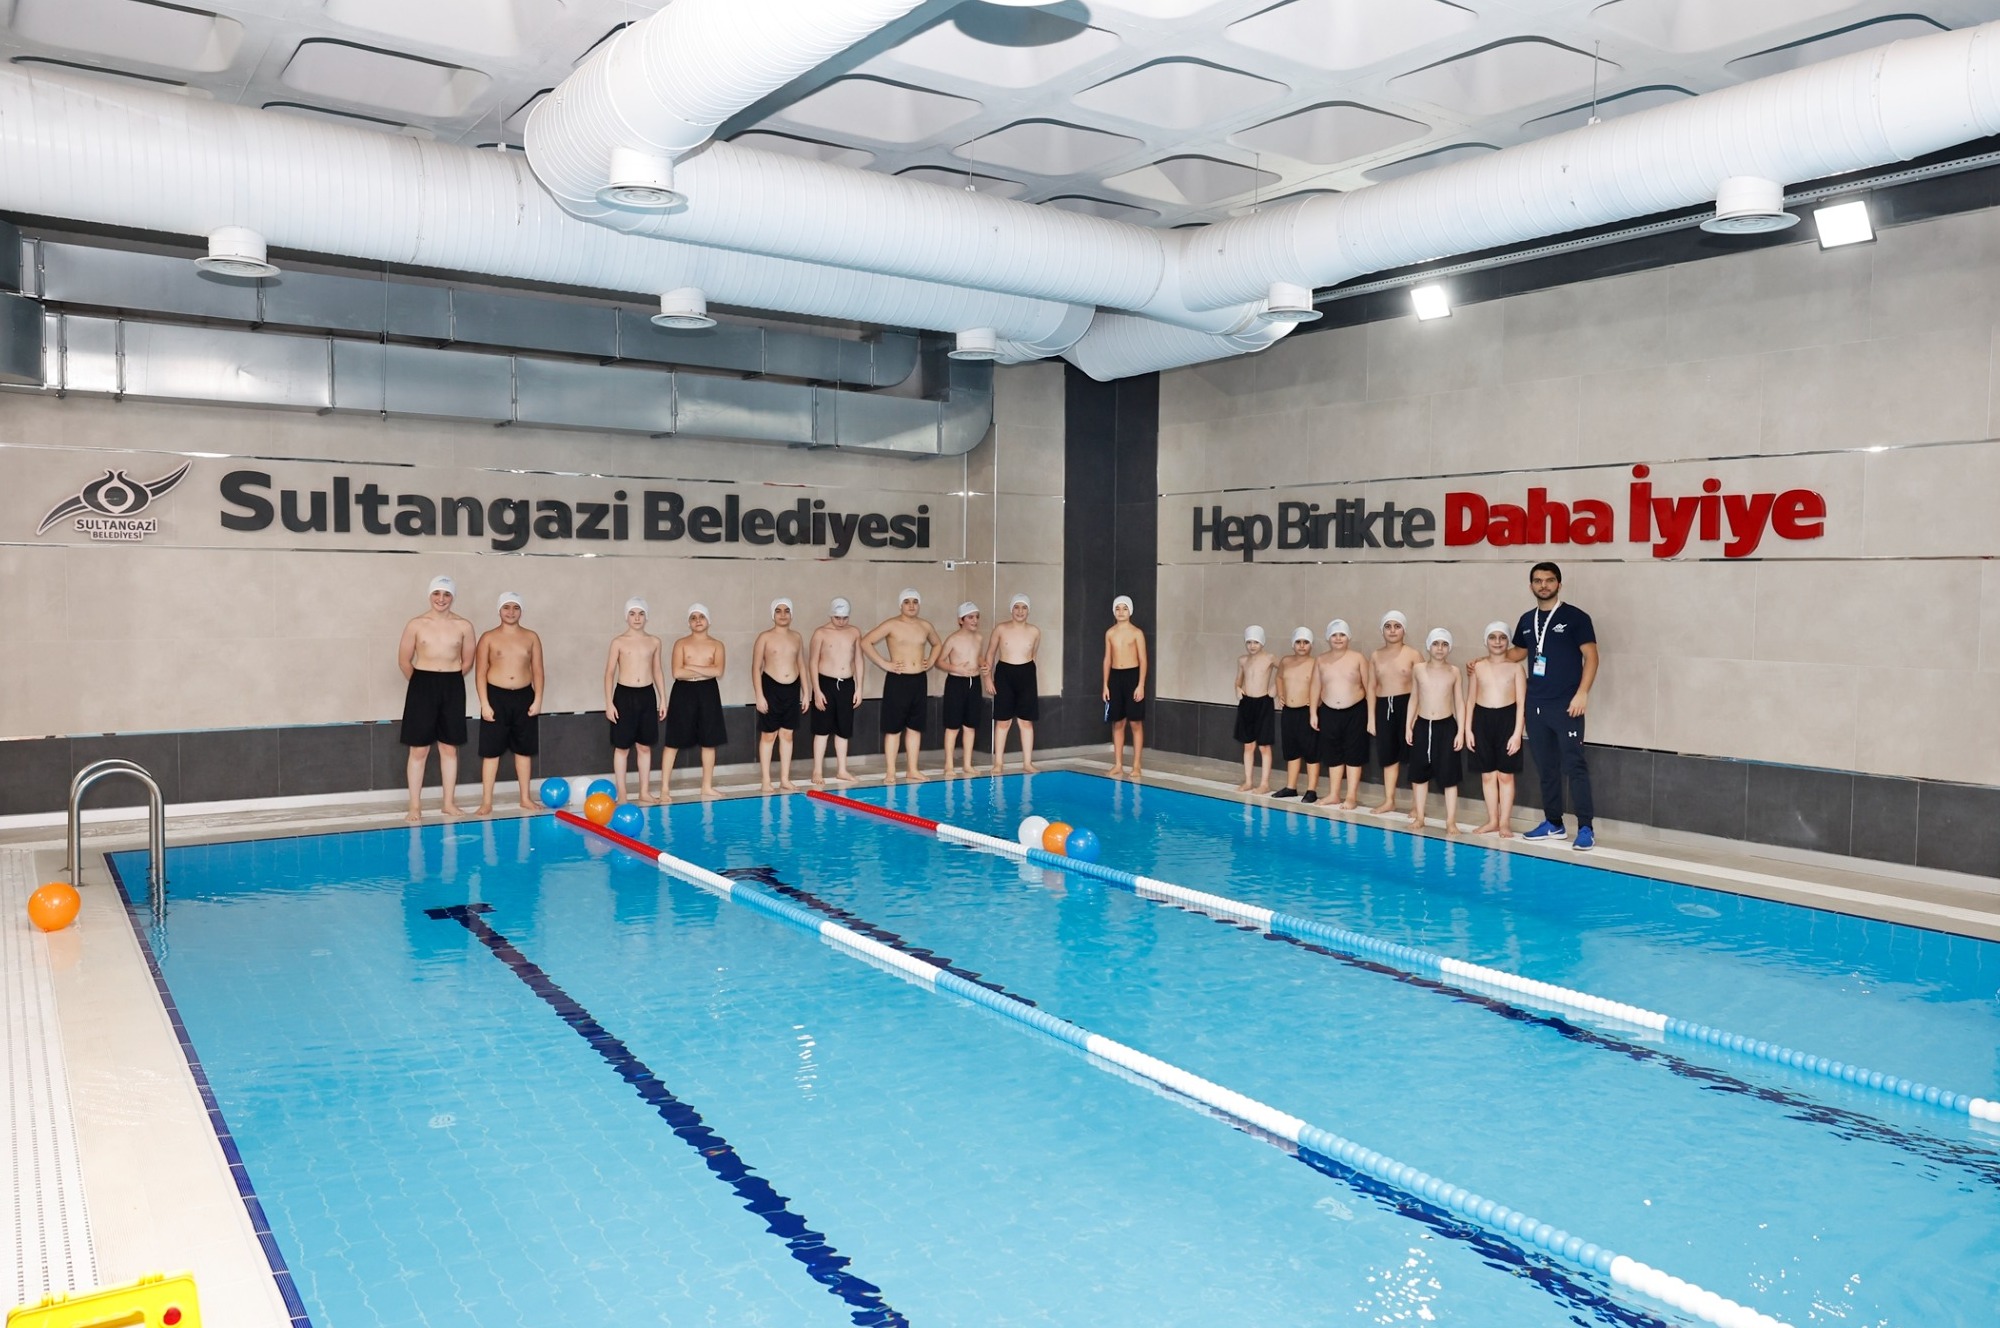 Sultangazi Belediyesi  “Kendine Değer Ver, Hayatında Spora Yer Ver” Diyerek Vatandaşları Yüzmeye Davet Ediyor